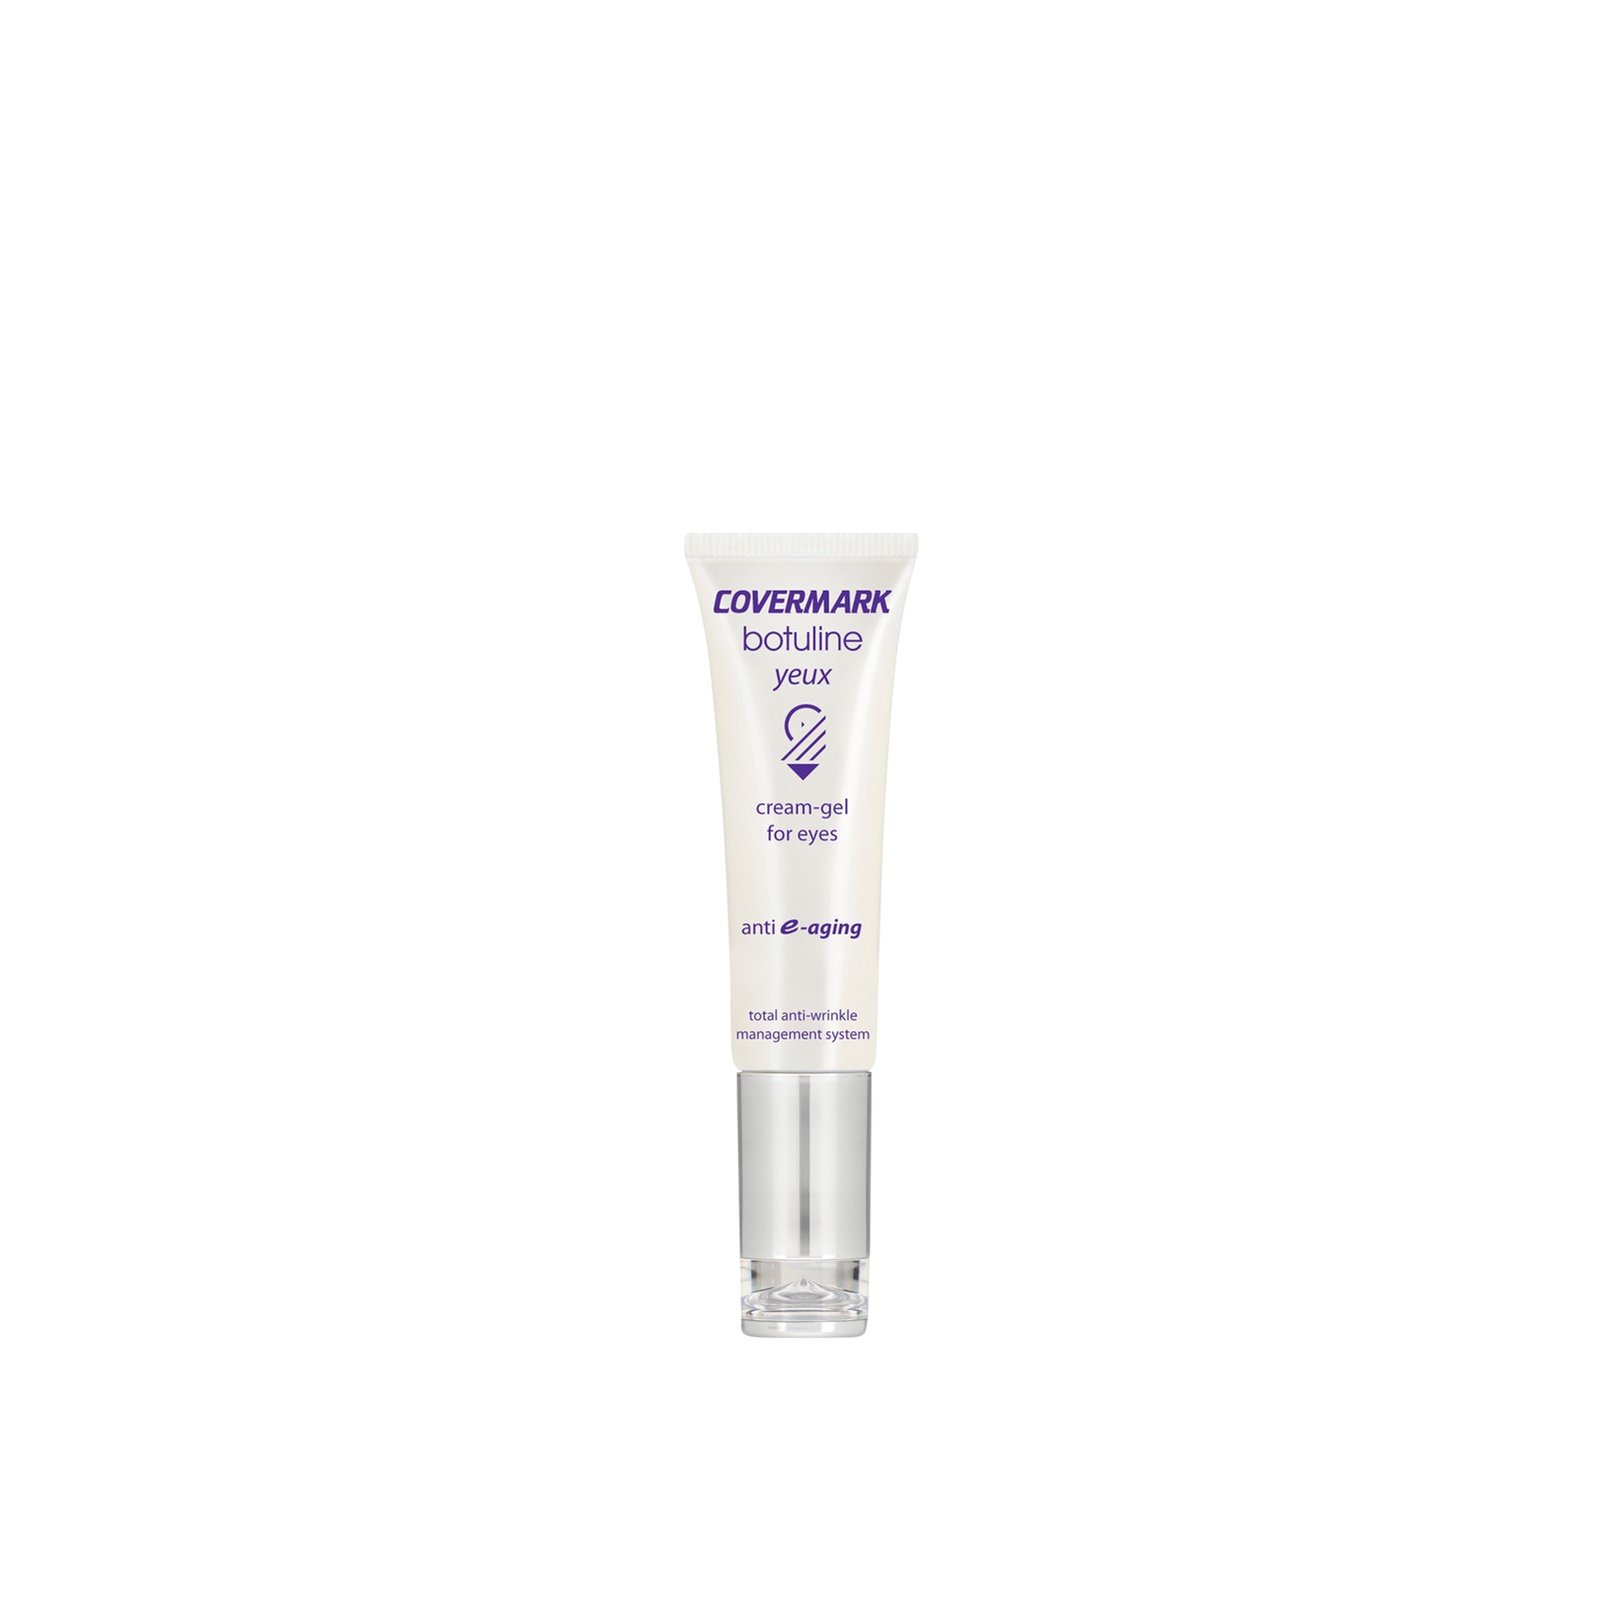 Covermark Botuline Cream-Gel For Eyes Tube 20ml (0.68 fl oz)